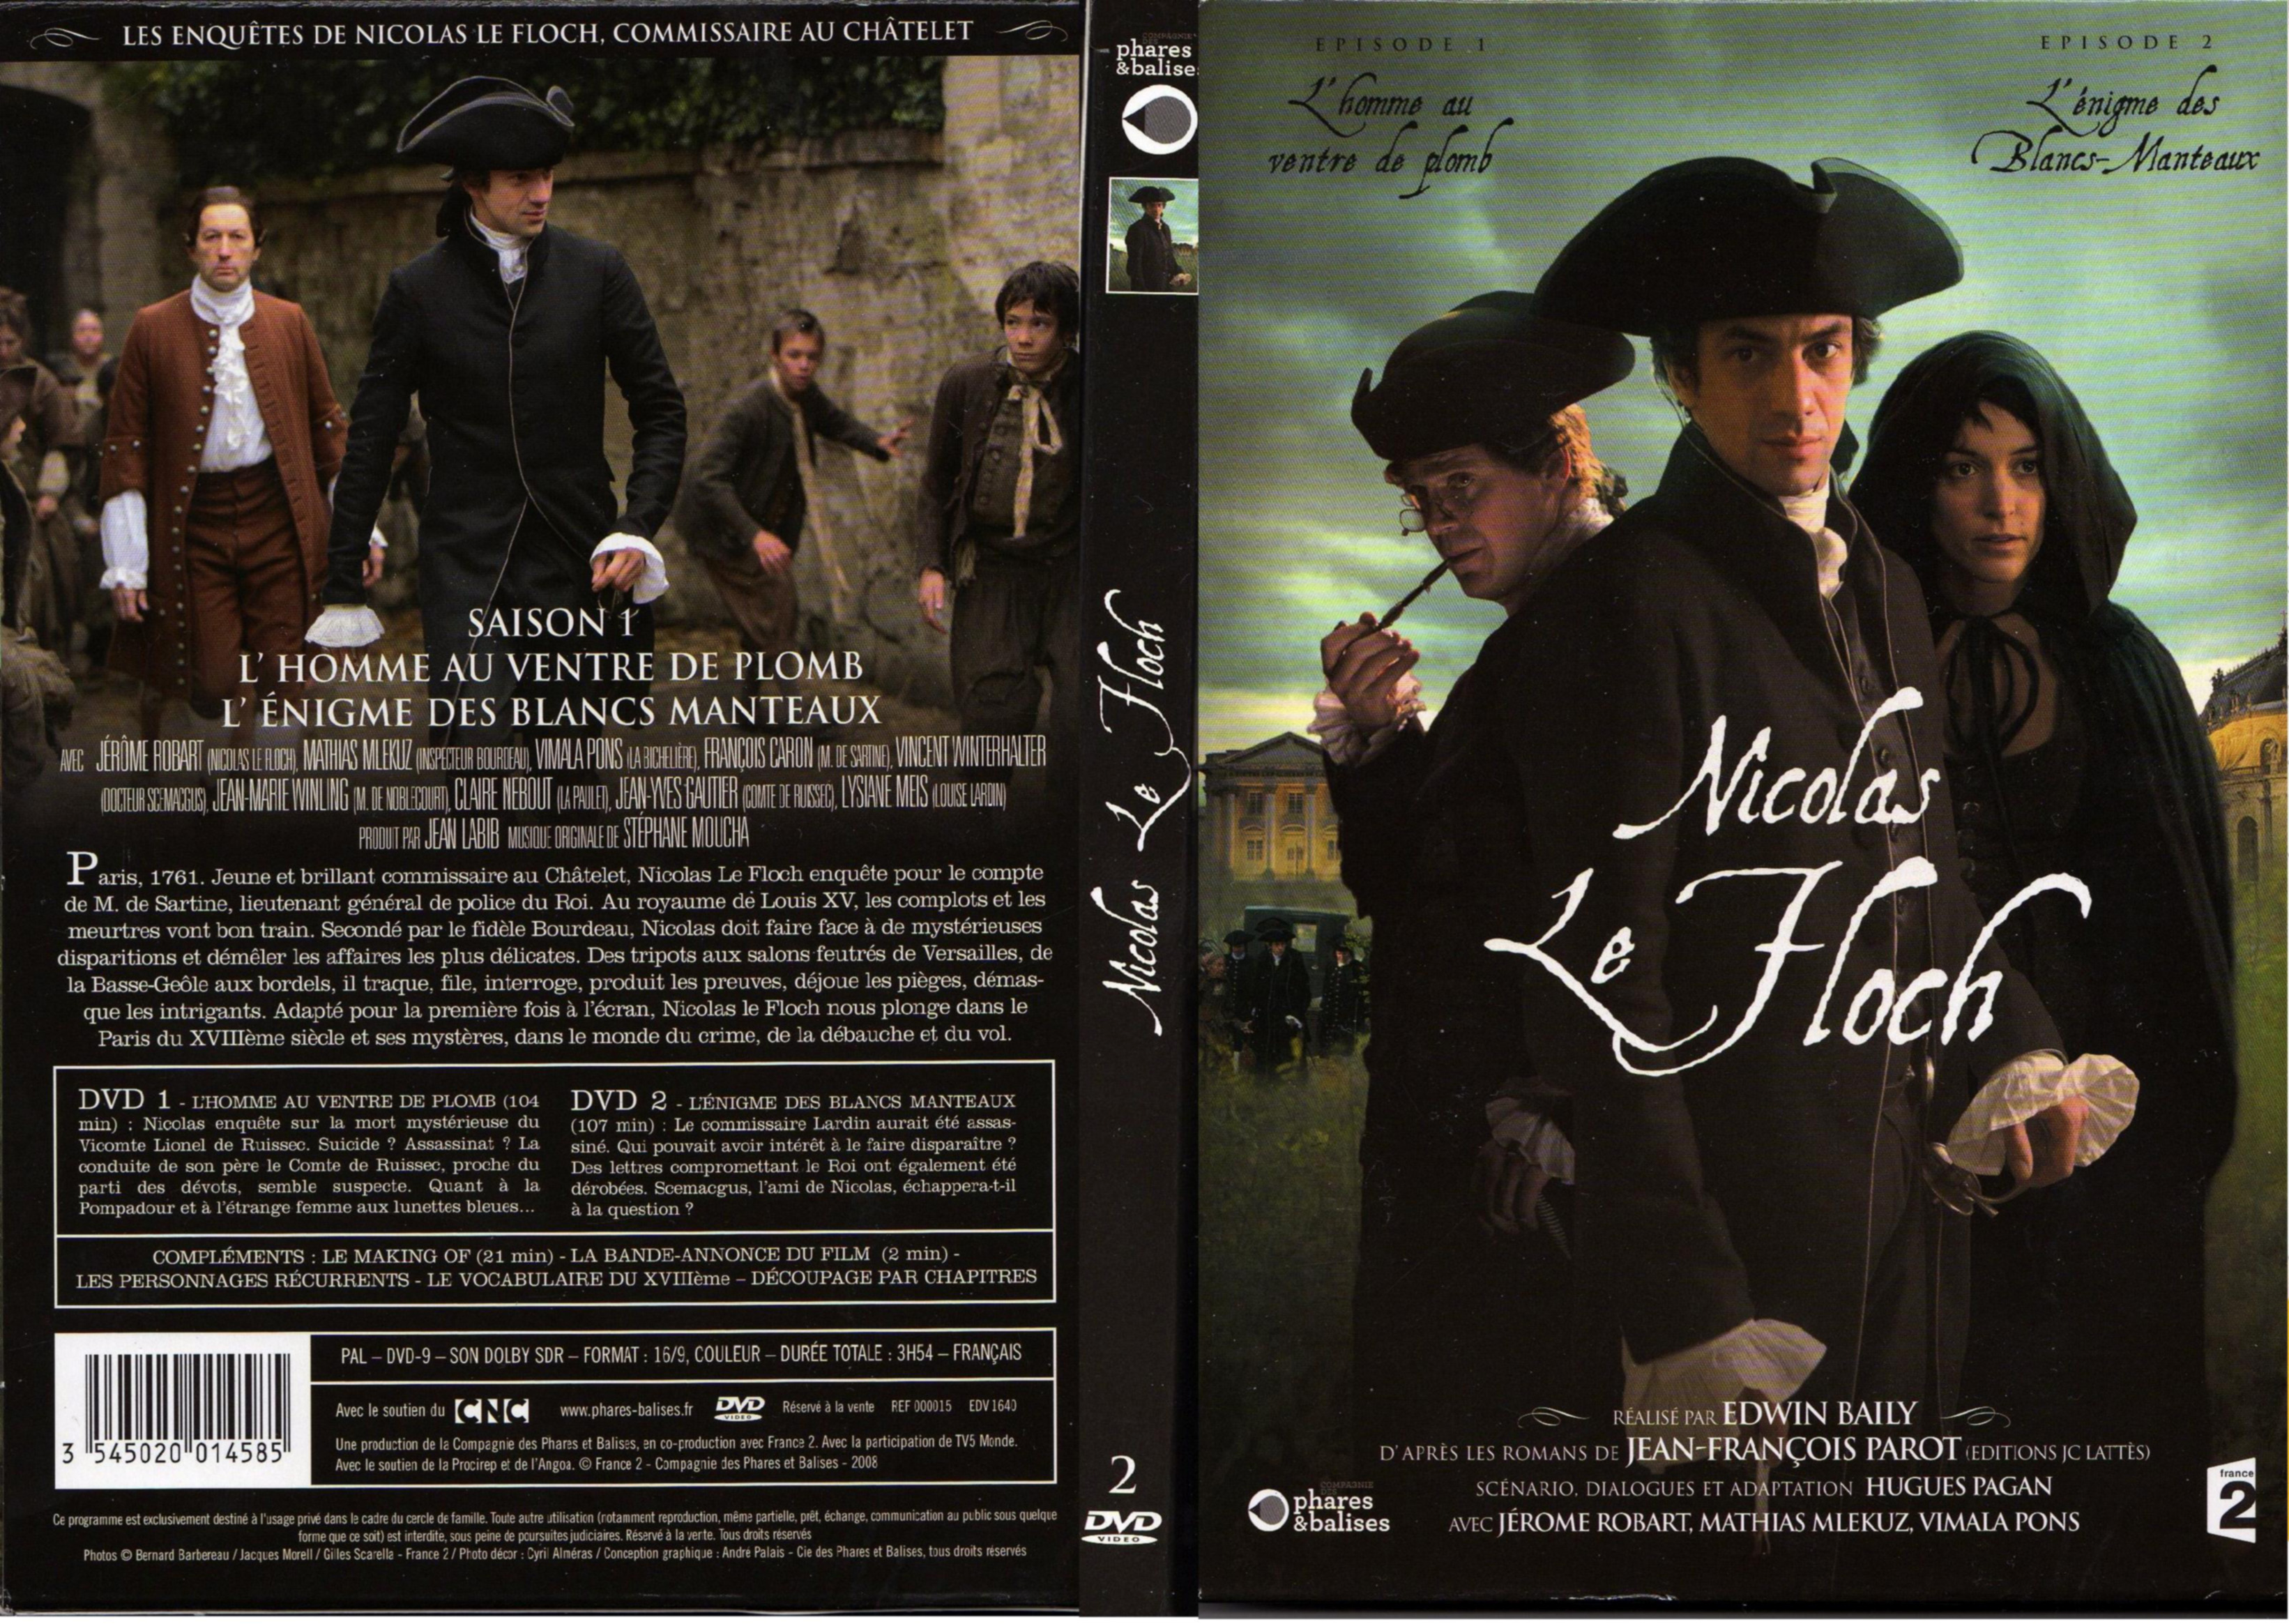 Jaquette DVD Nicolas Le Floch Saison 1